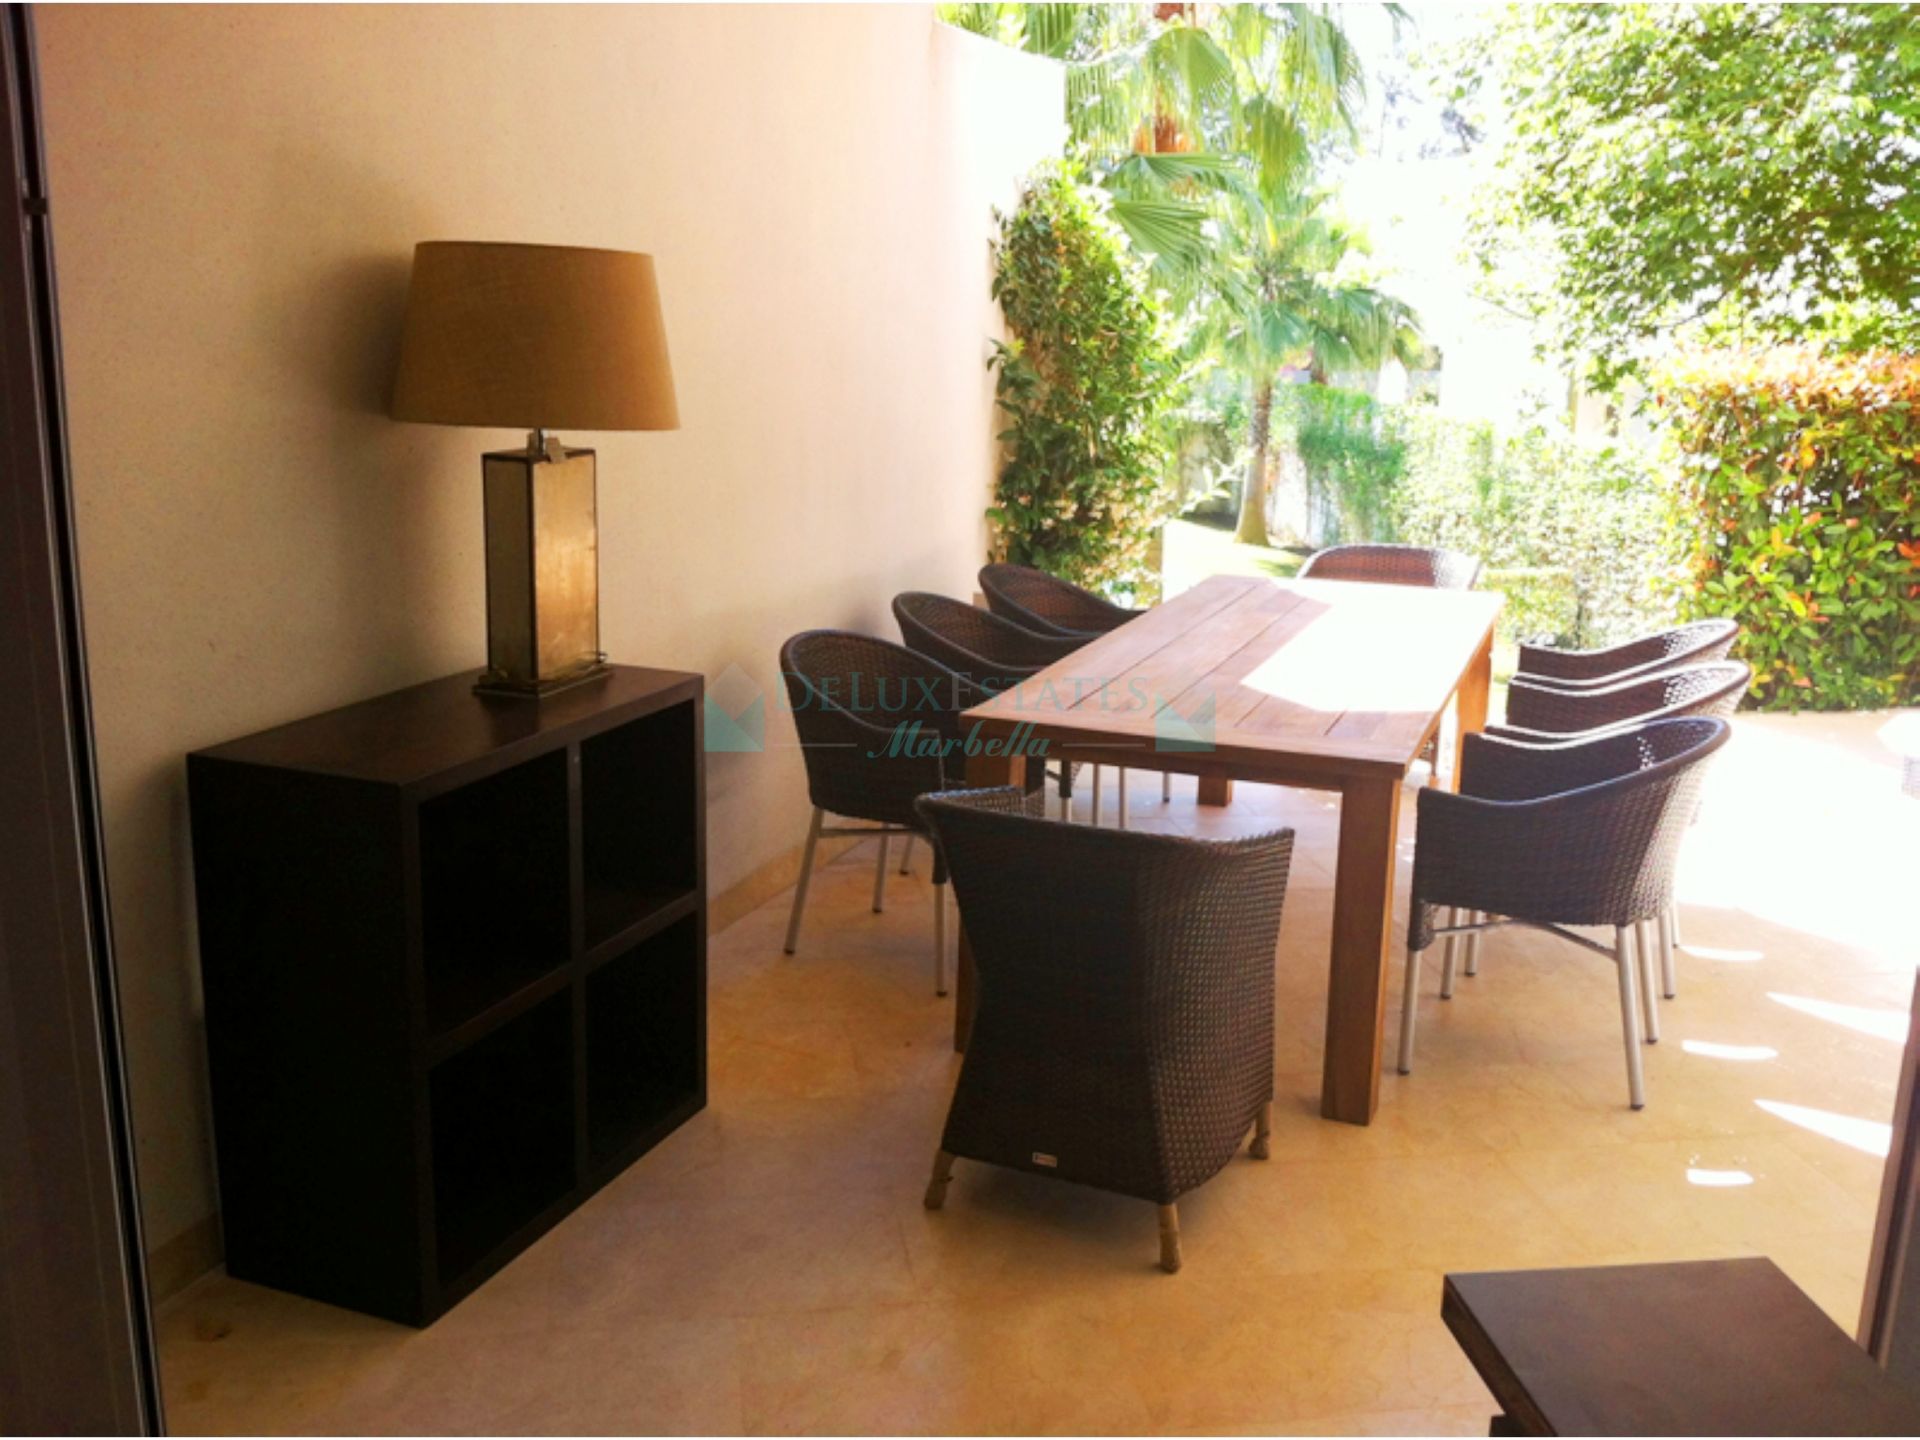 Apartamento Planta Baja en venta en Sotogrande Costa, Sotogrande